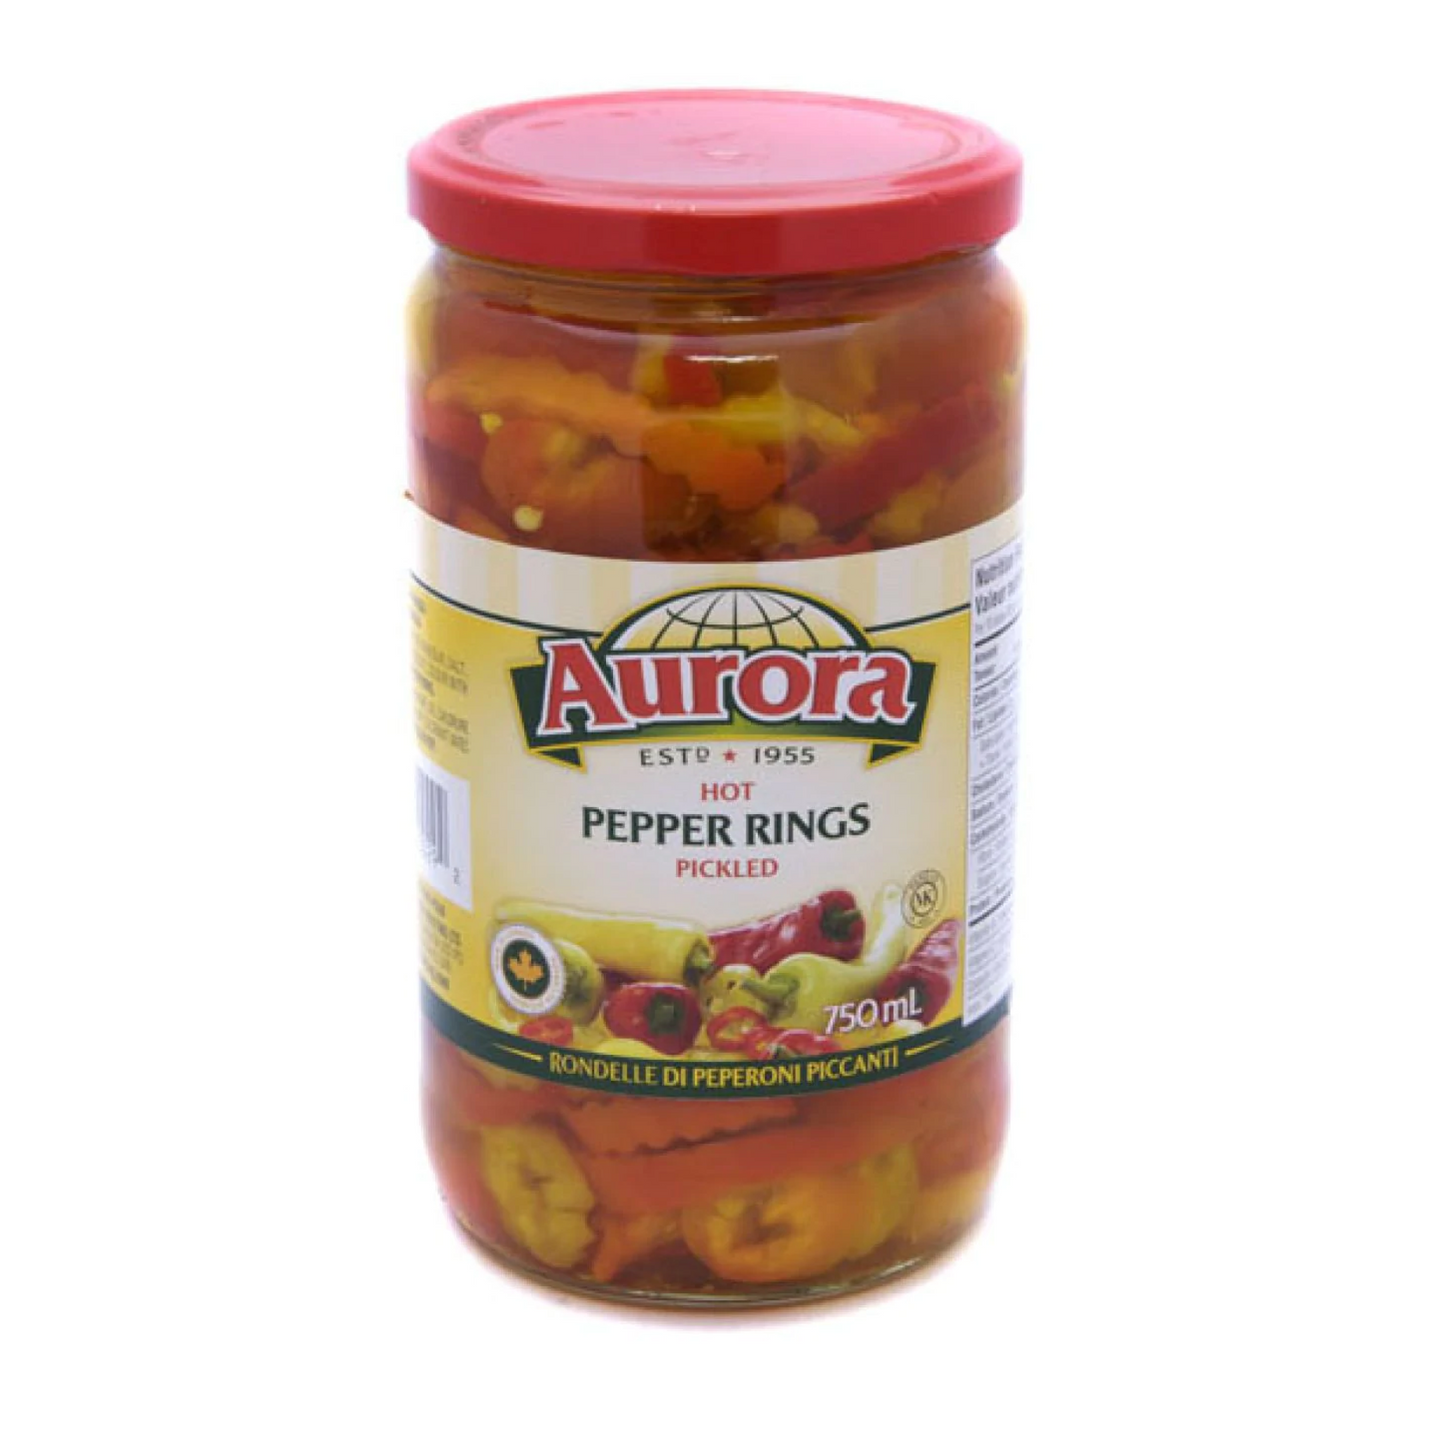 Aurora Pickled Hot Pepper Rings 750ml